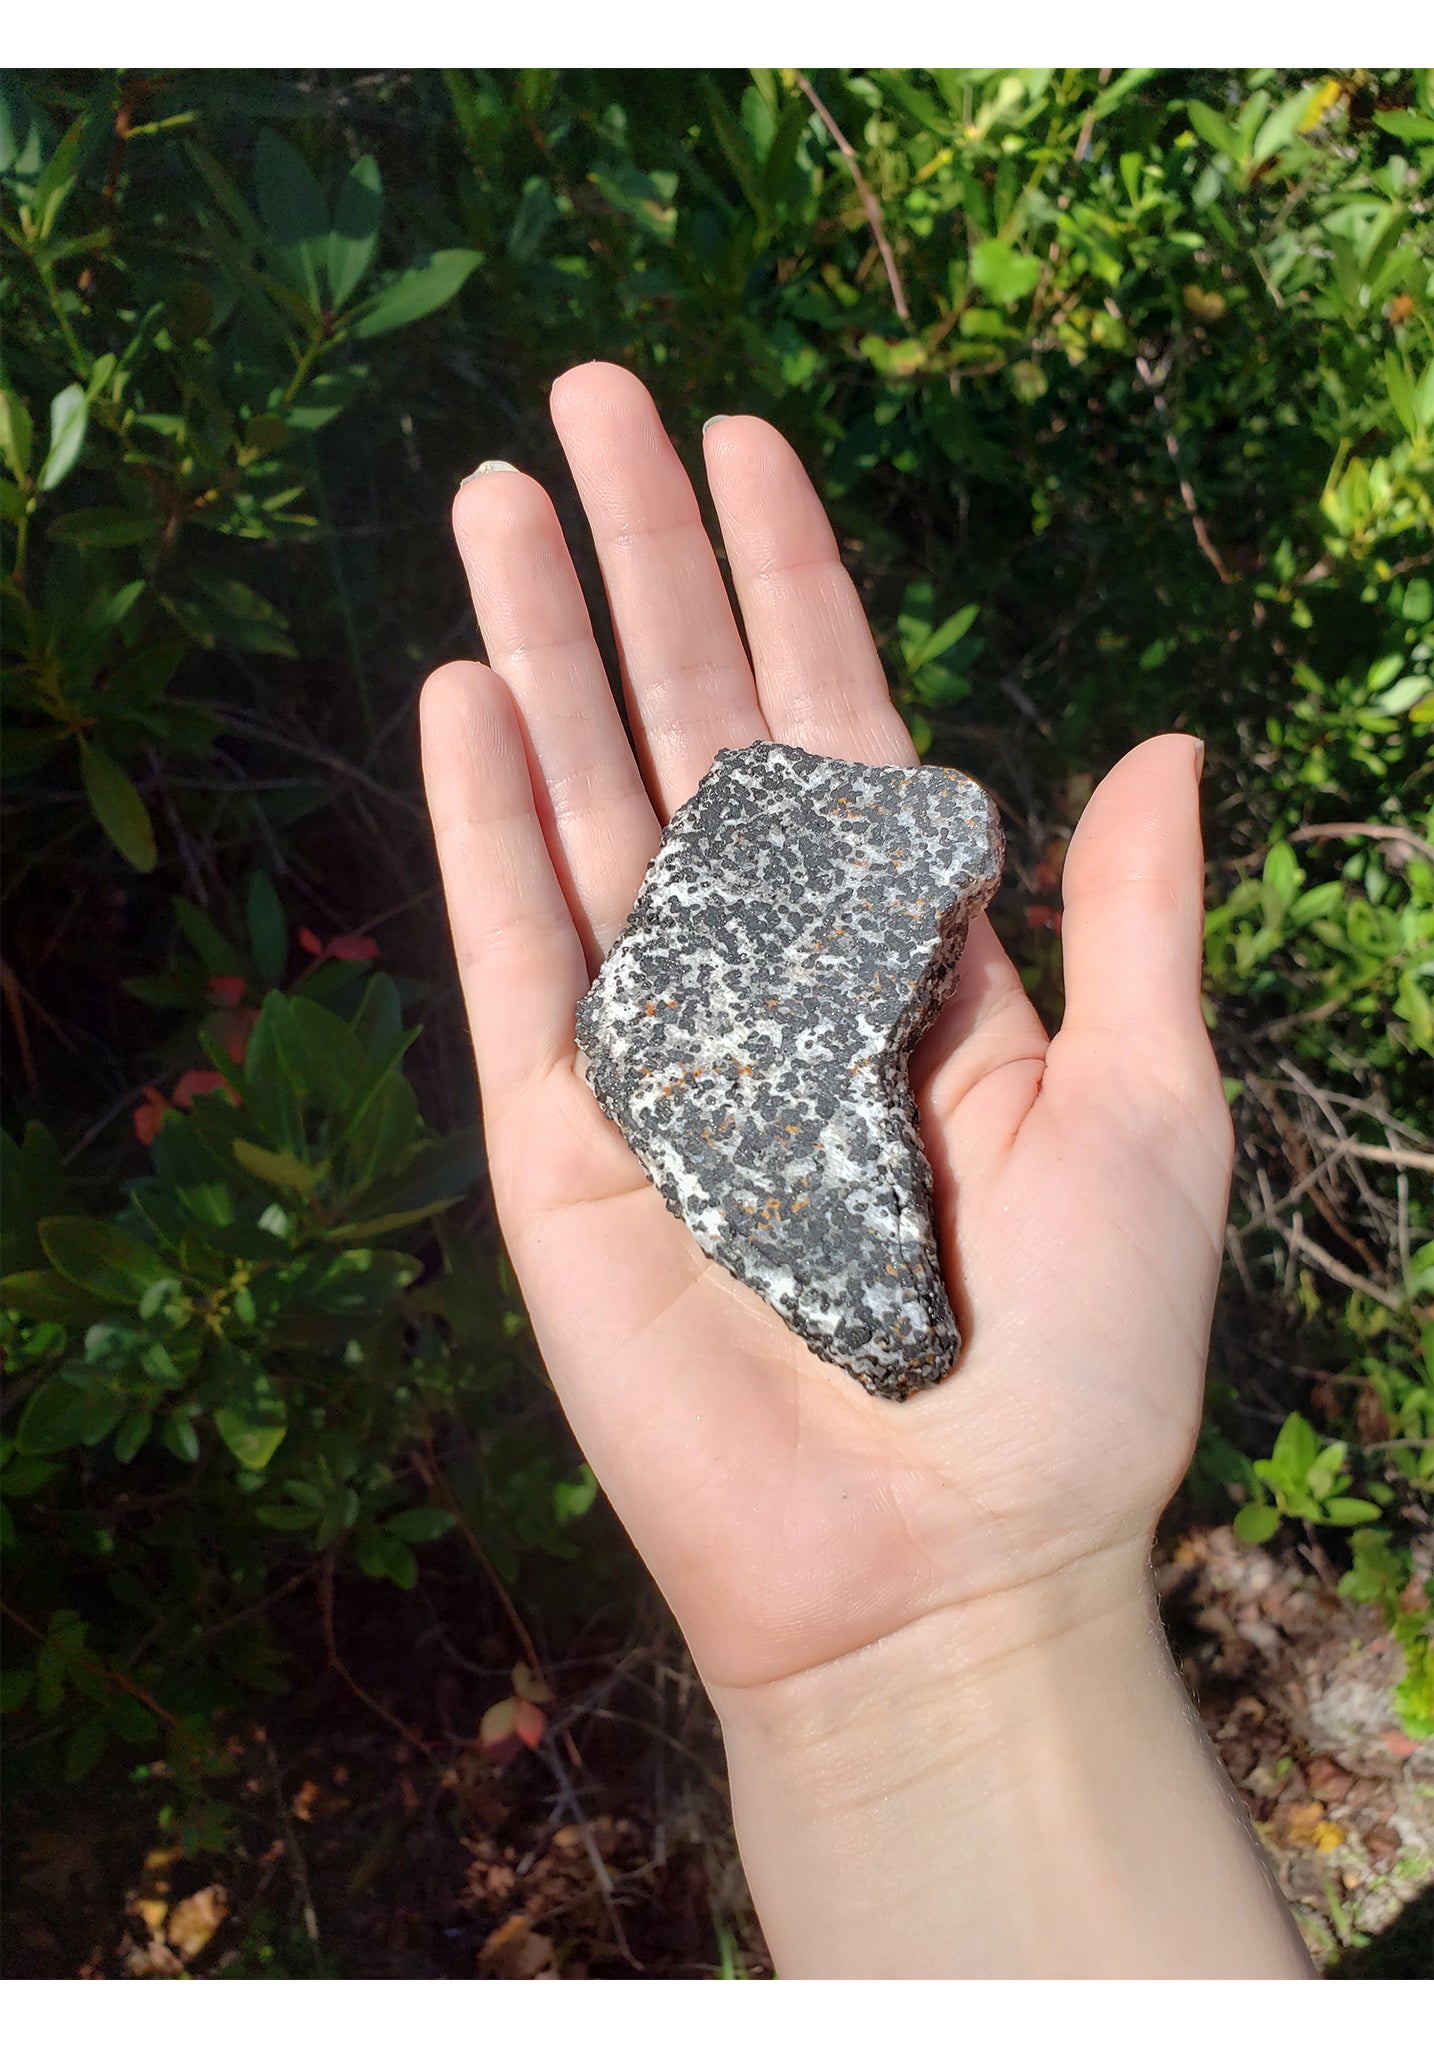 Franklin Willemite in Calcite Matrix Natural Gemstone Slab 4